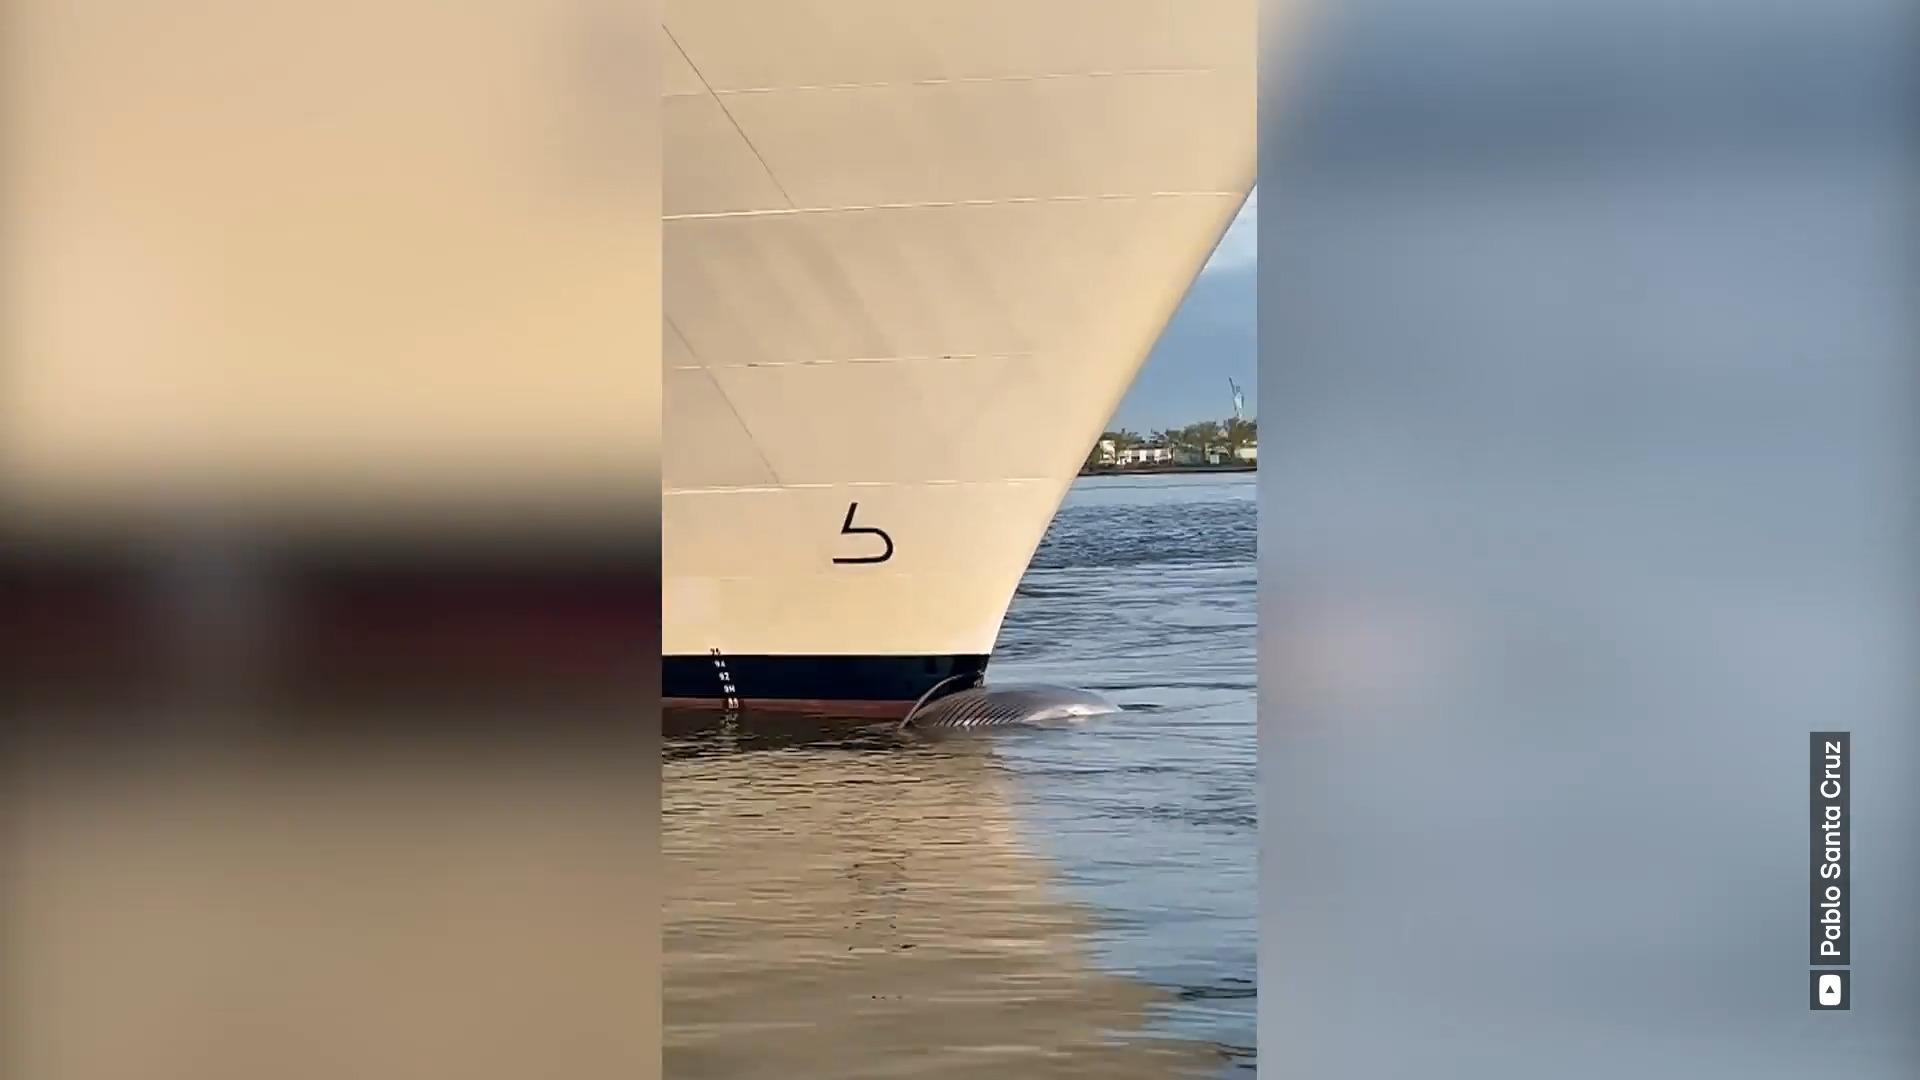 Toter Wal unter Schiffsbug entdeckt!  Horrorfund im New Yorker Hafen